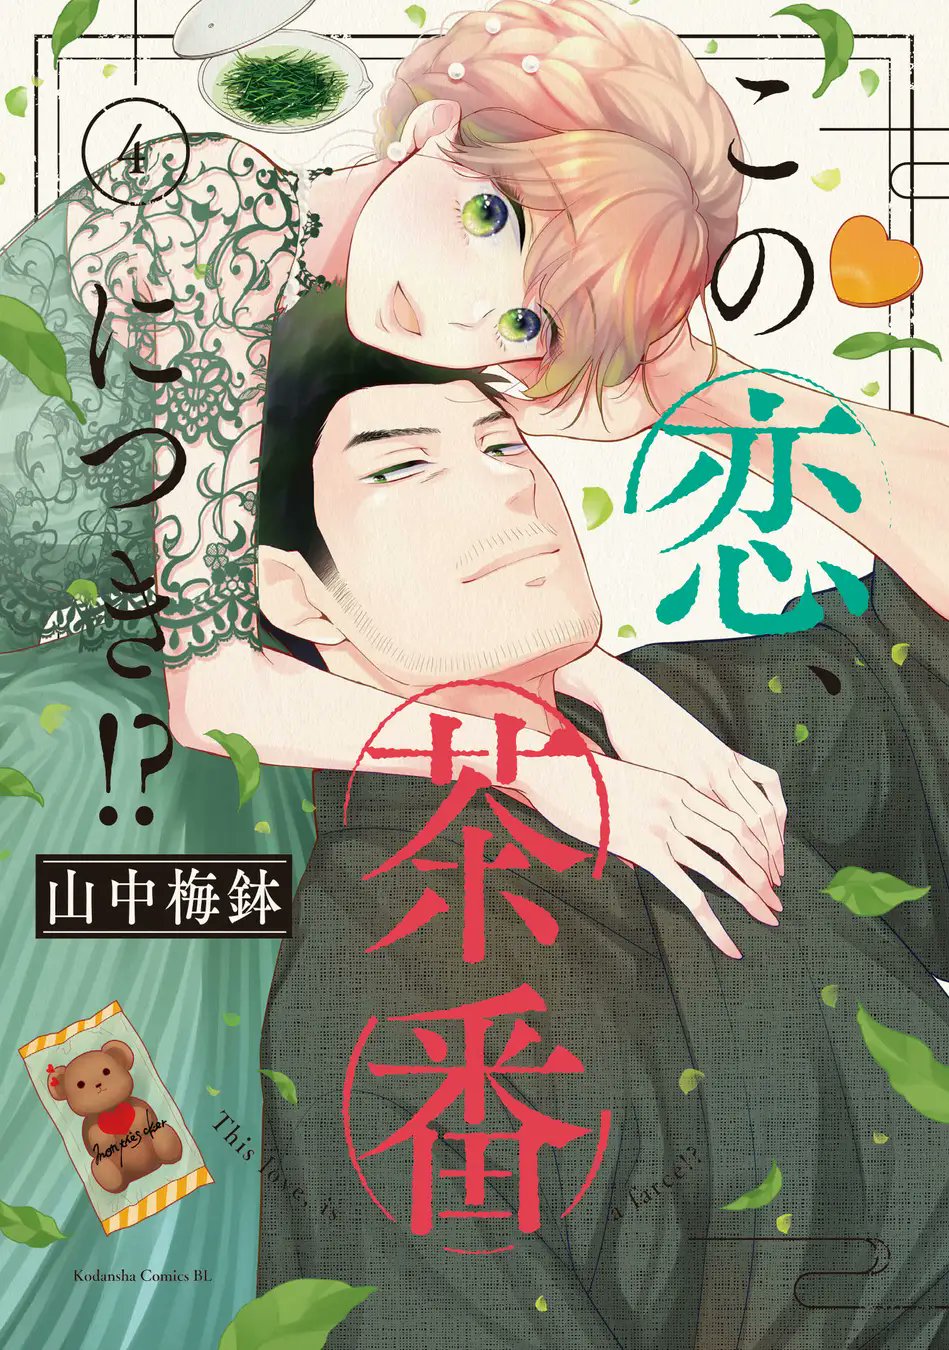 Kono Koi Chaban Ni Tsuki Manga Mogura RE on Twitter: "Tea Farm Romance "Kono koi, chaban ni